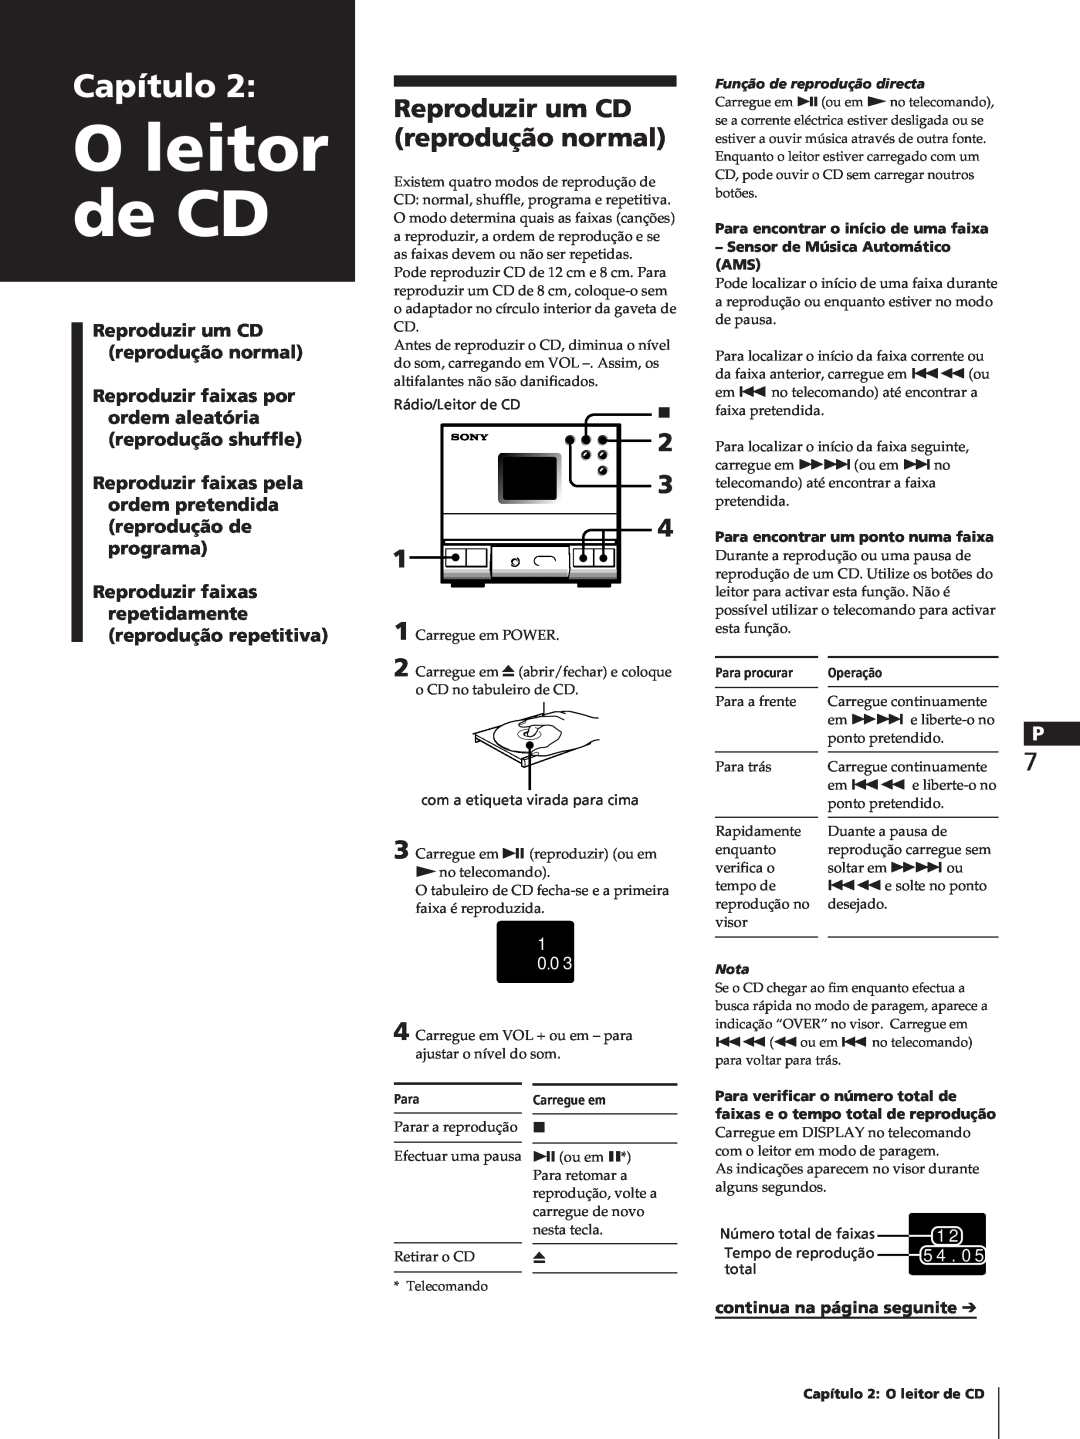 Sony SA-N11, HCD-T1, TC-TX1 manual Oleitor de CD, Capítulo, Reproduzir um CD reprodução normal, 1 0 0 